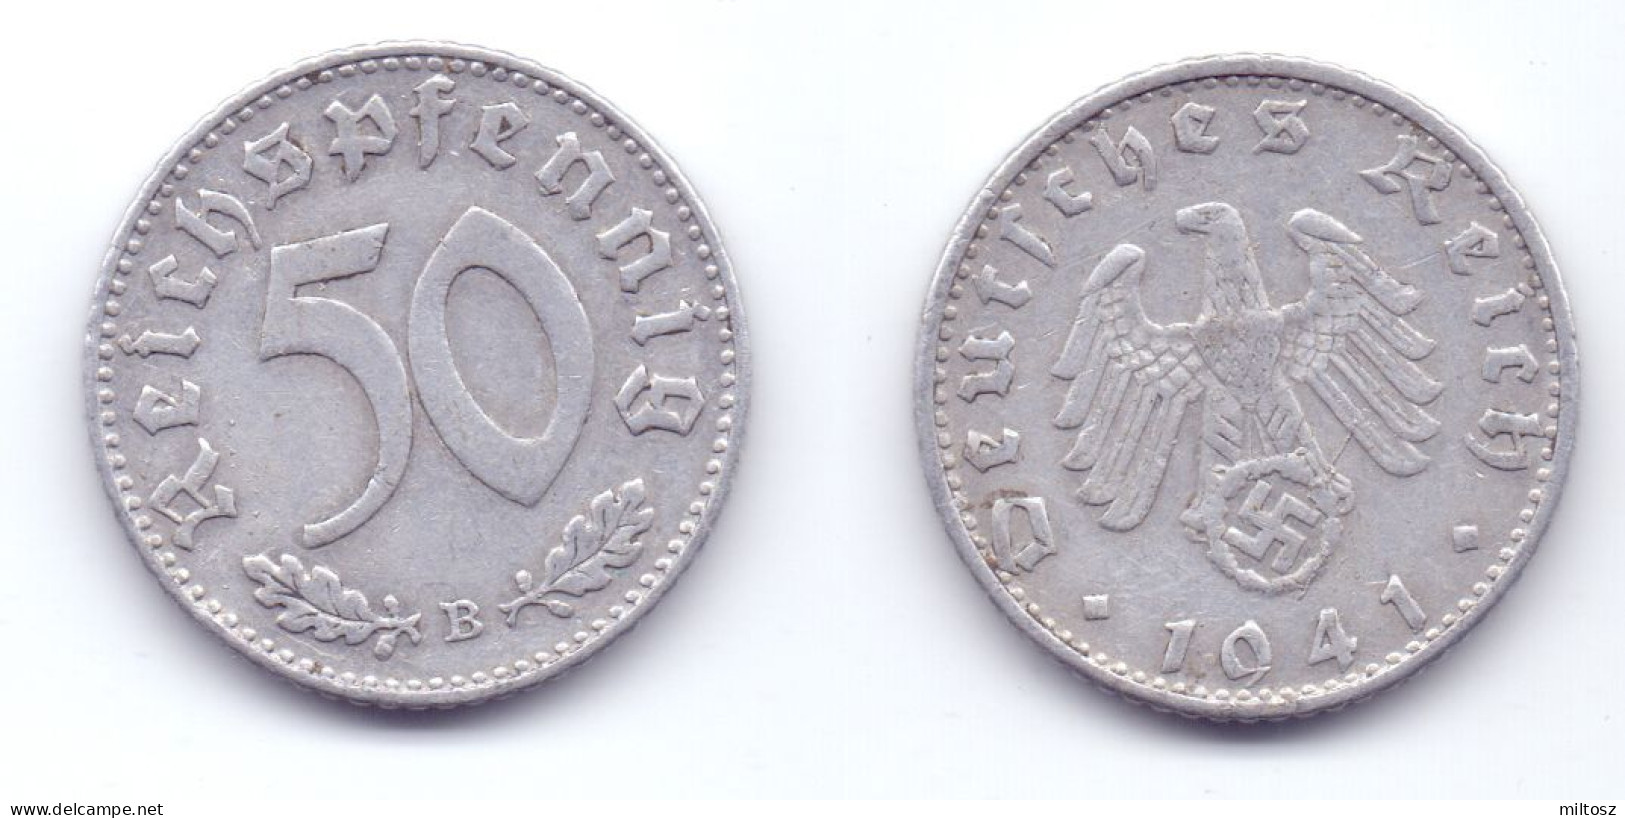 Germany 50 Reichspfennig 1941 B WWII Issue - 50 Reichspfennig